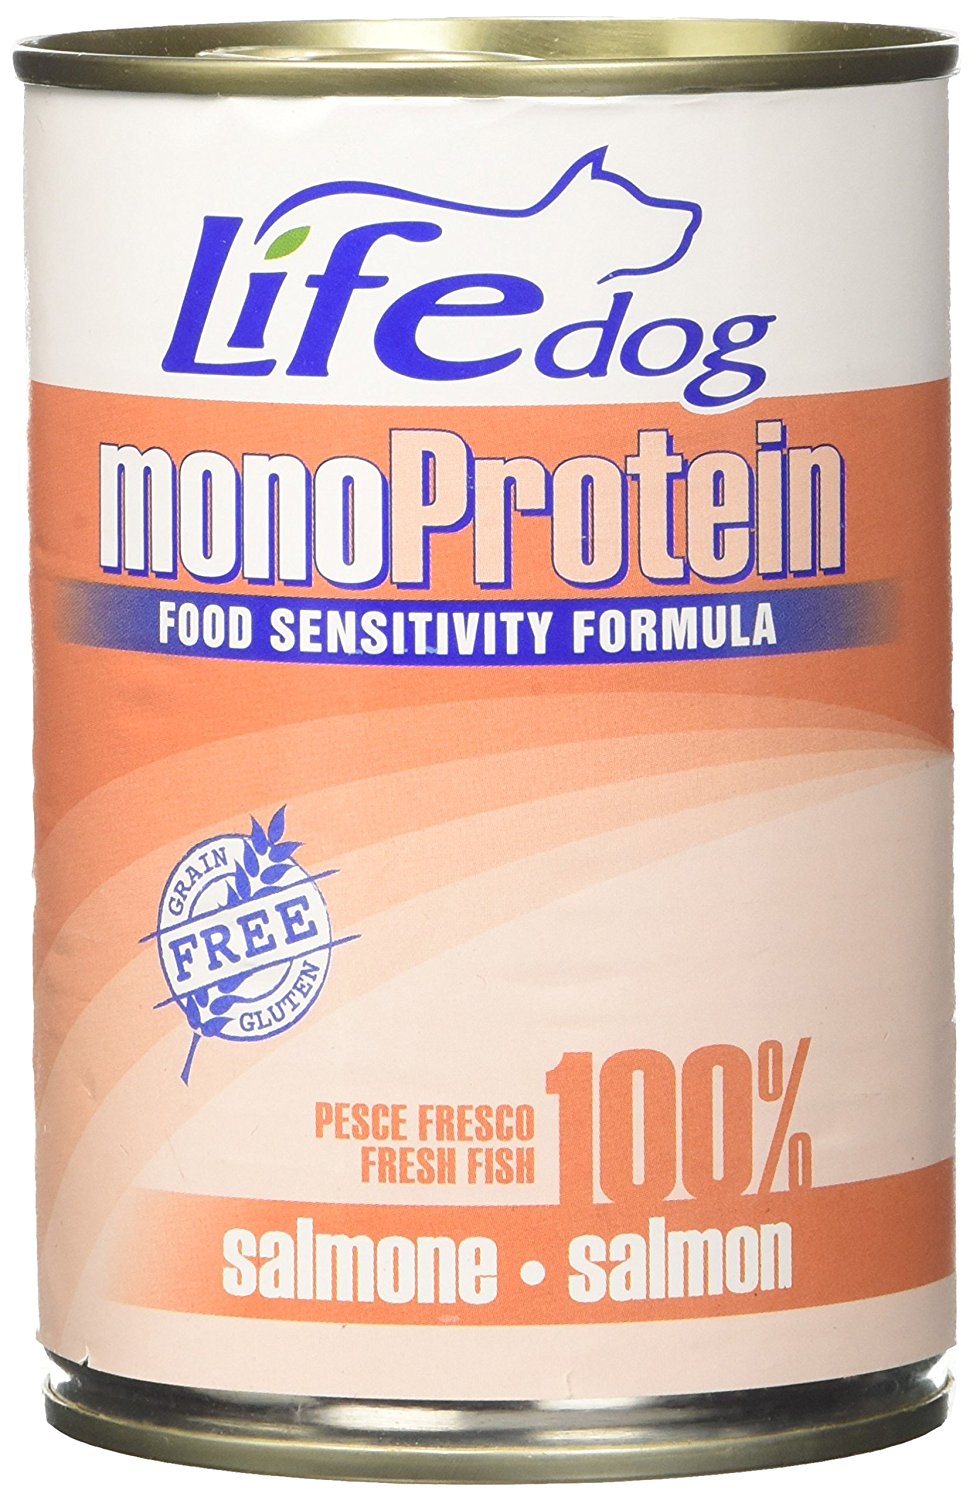 Life dog monoProtein Salmon 400g